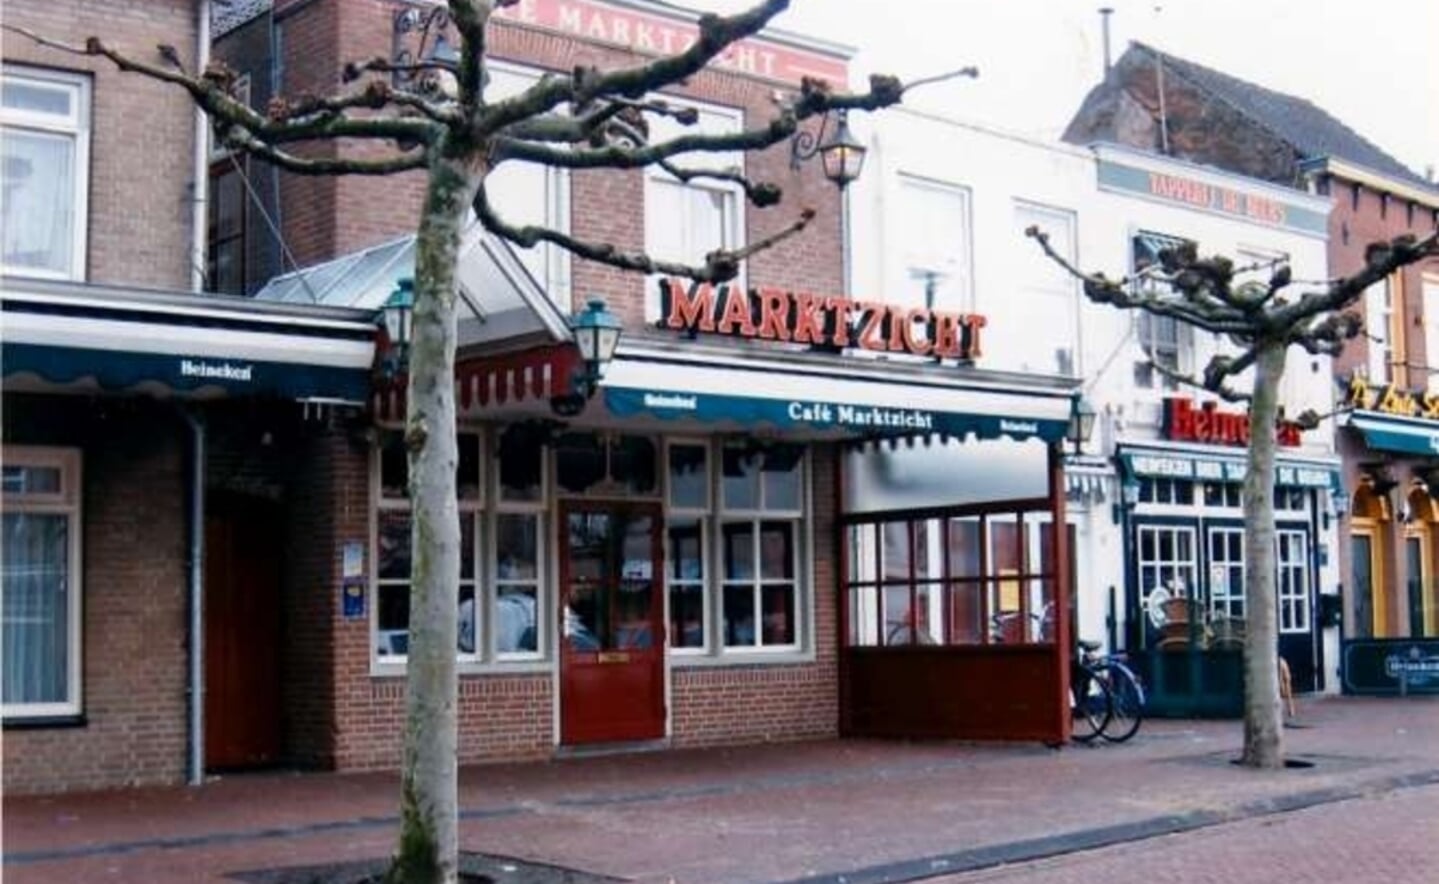 Café Marktzicht in 2005. (Foto: Piet Rood)